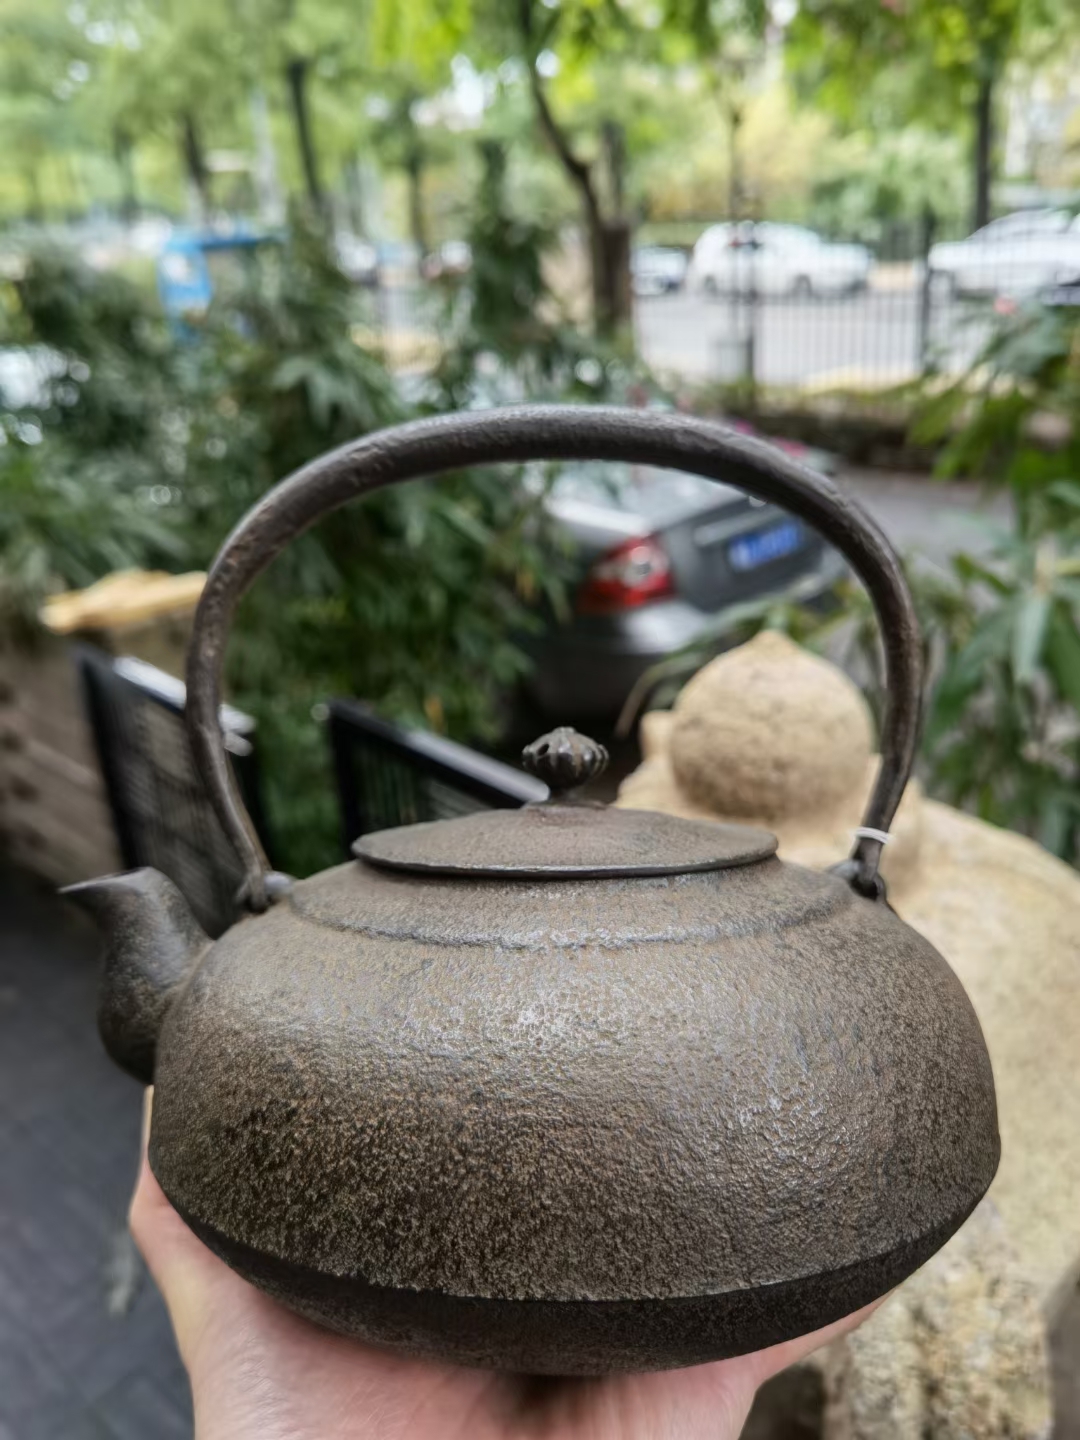 日本 昭和早期 南部 砂铁 铁壶